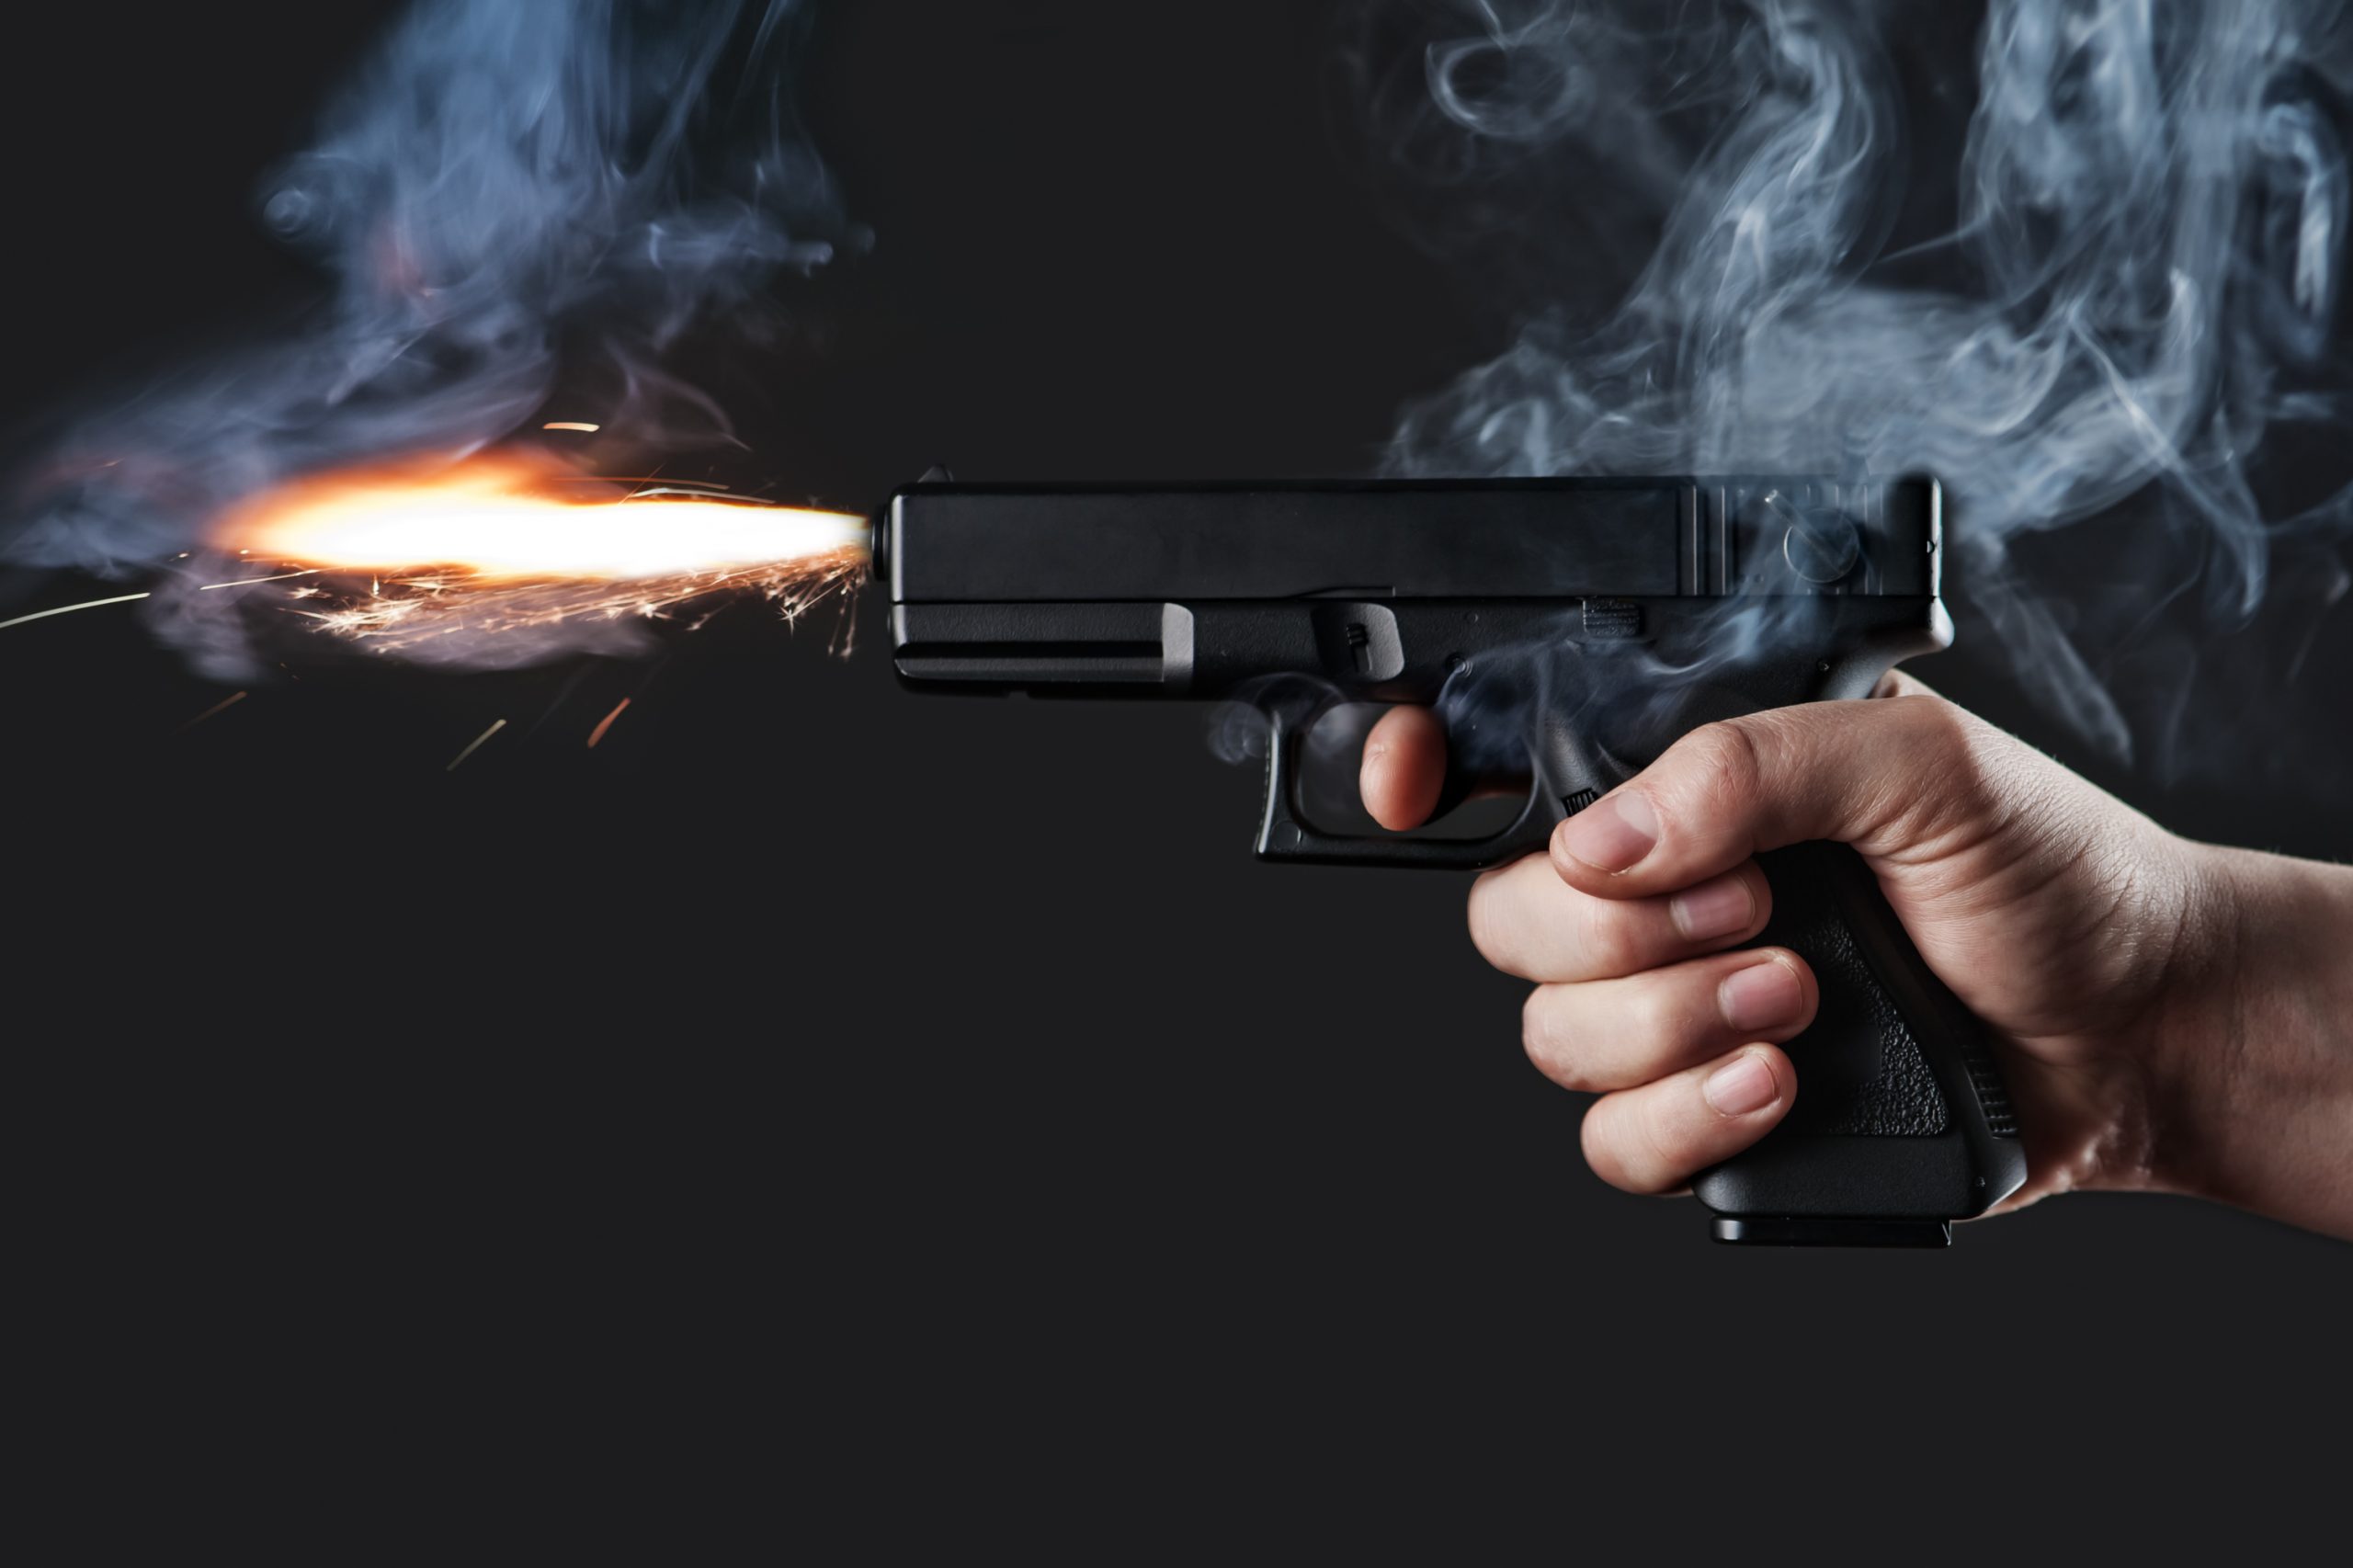 Handgun firing with fire and smoke